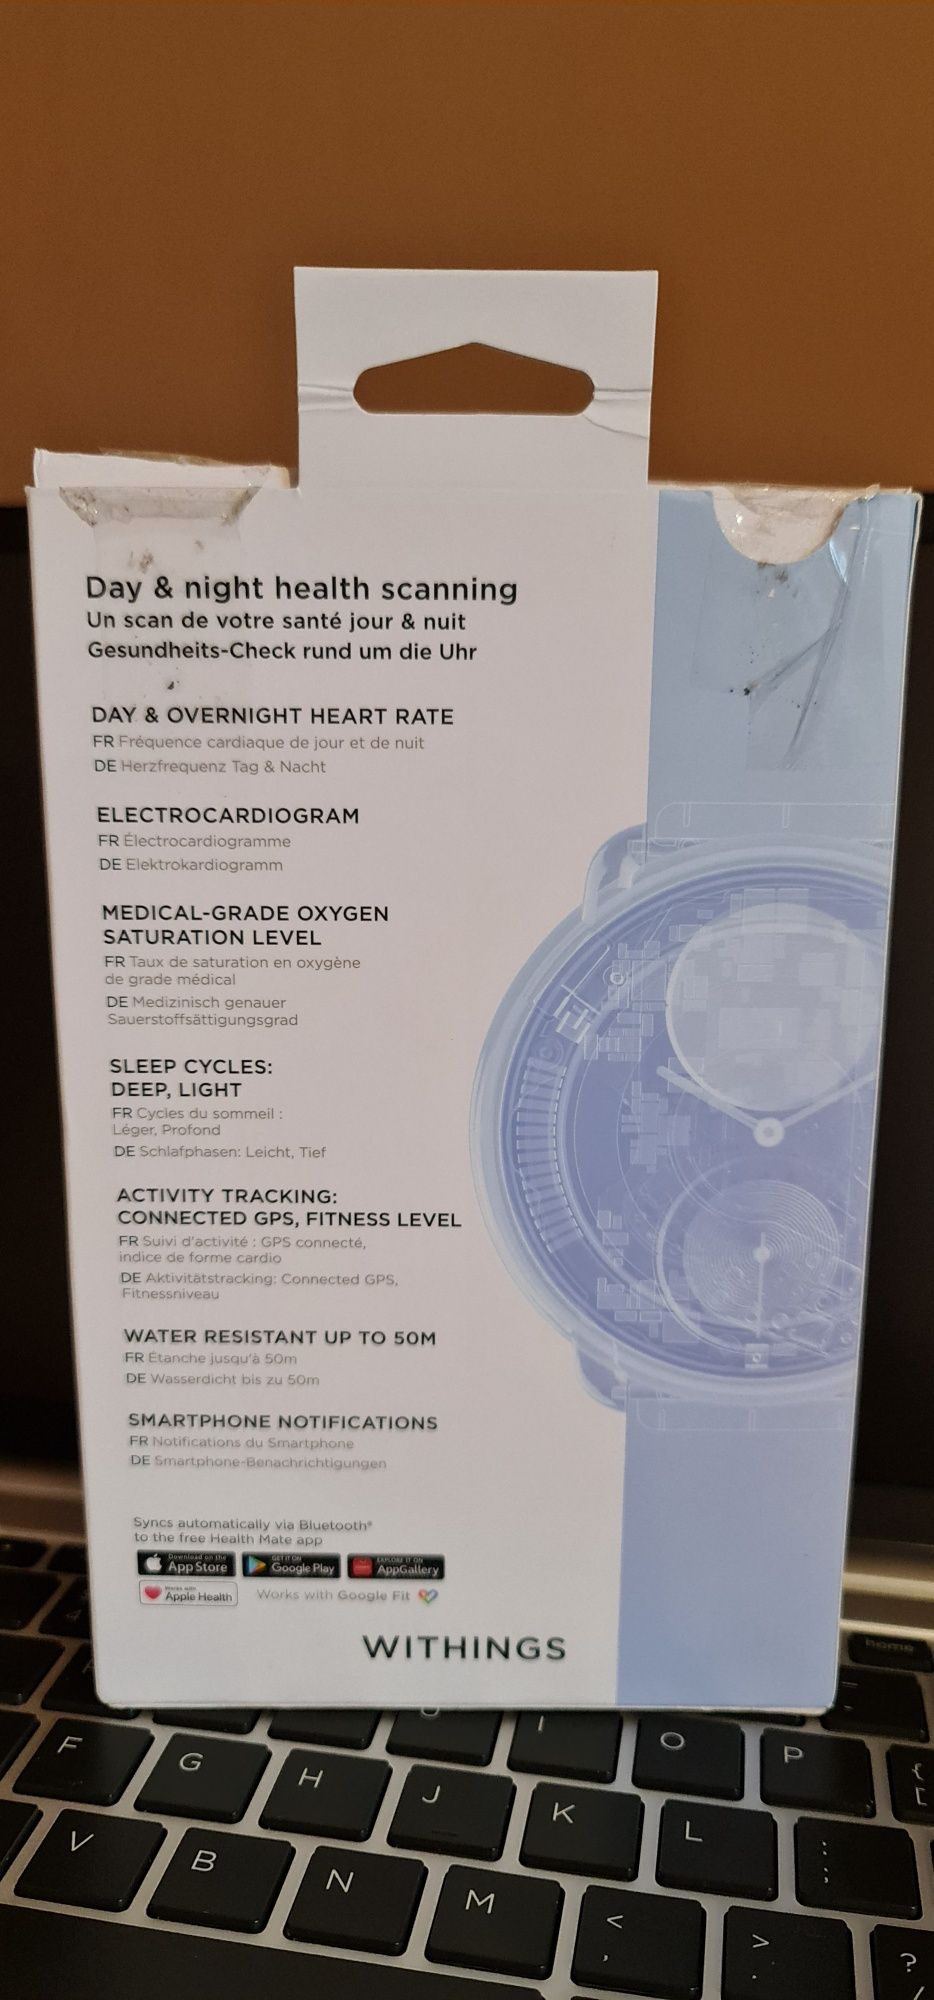 Zegarek smartwatch Withings ScanWatch 38mm z EKG Szafirowe szkło